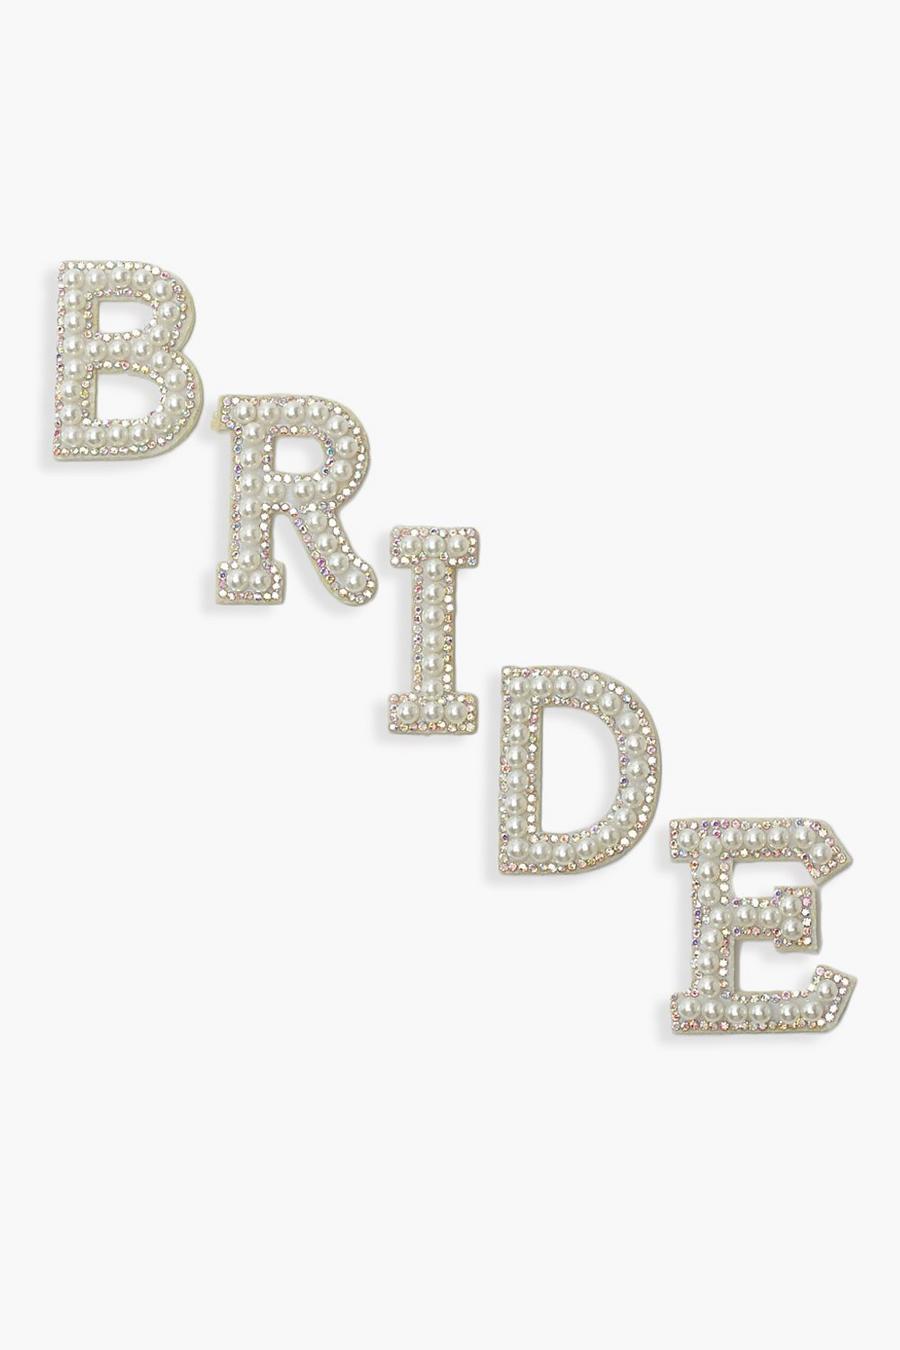 Letras decorativas con perlas e incrustaciones Bride, Cream blanco image number 1